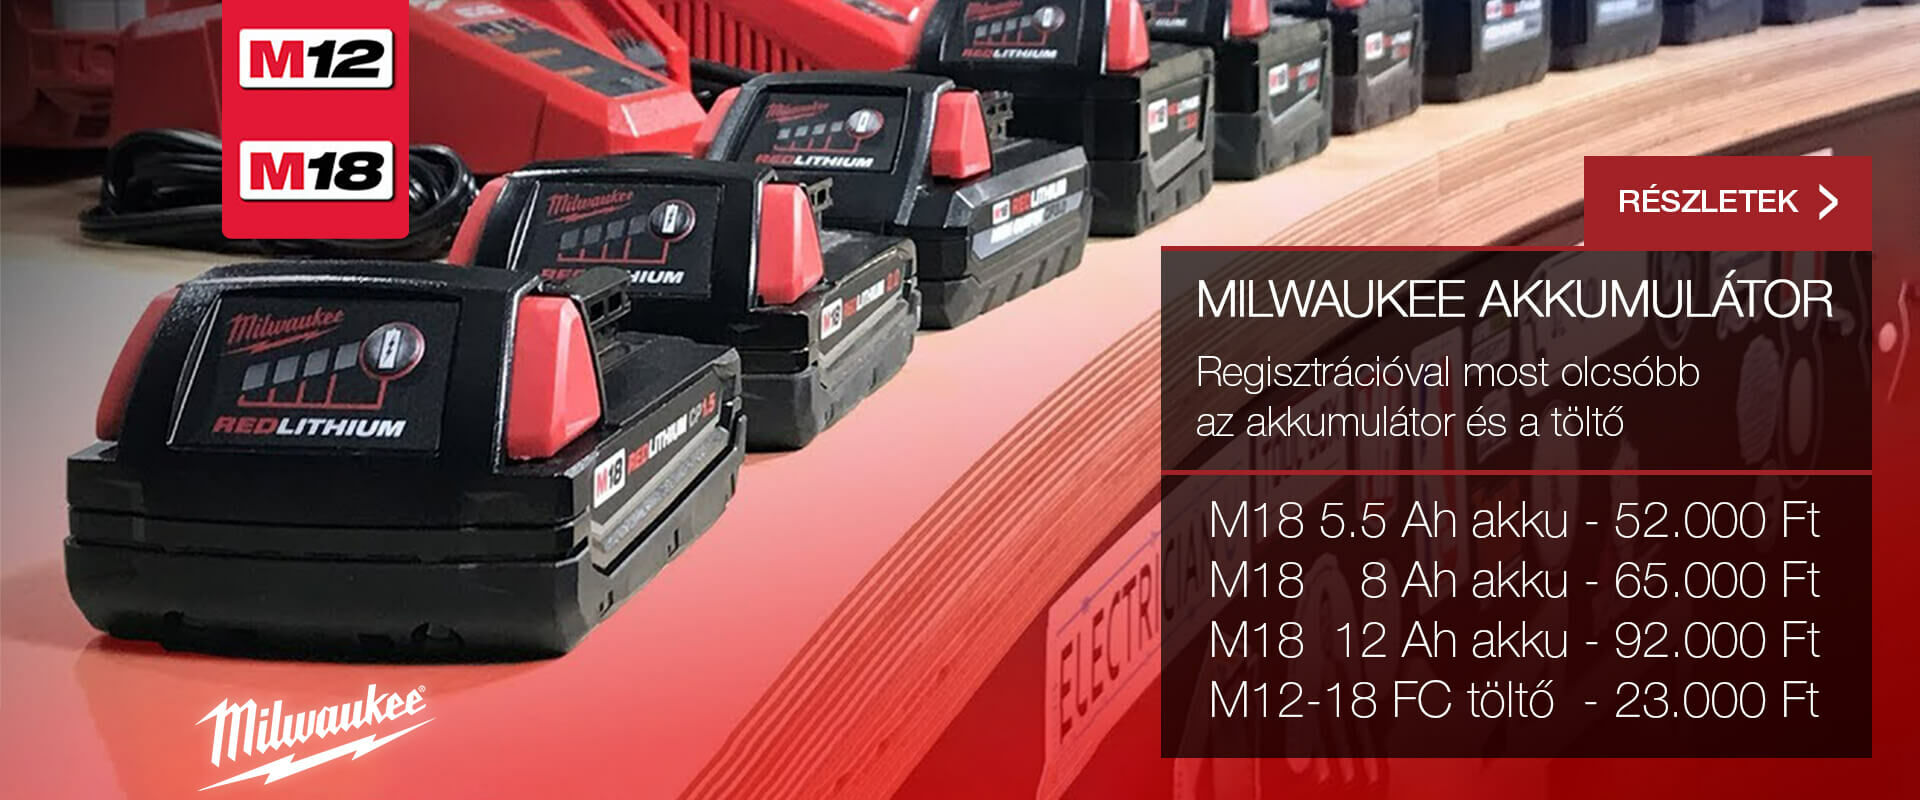 Milwaukee M12 és M18 akkumulátor és töltő